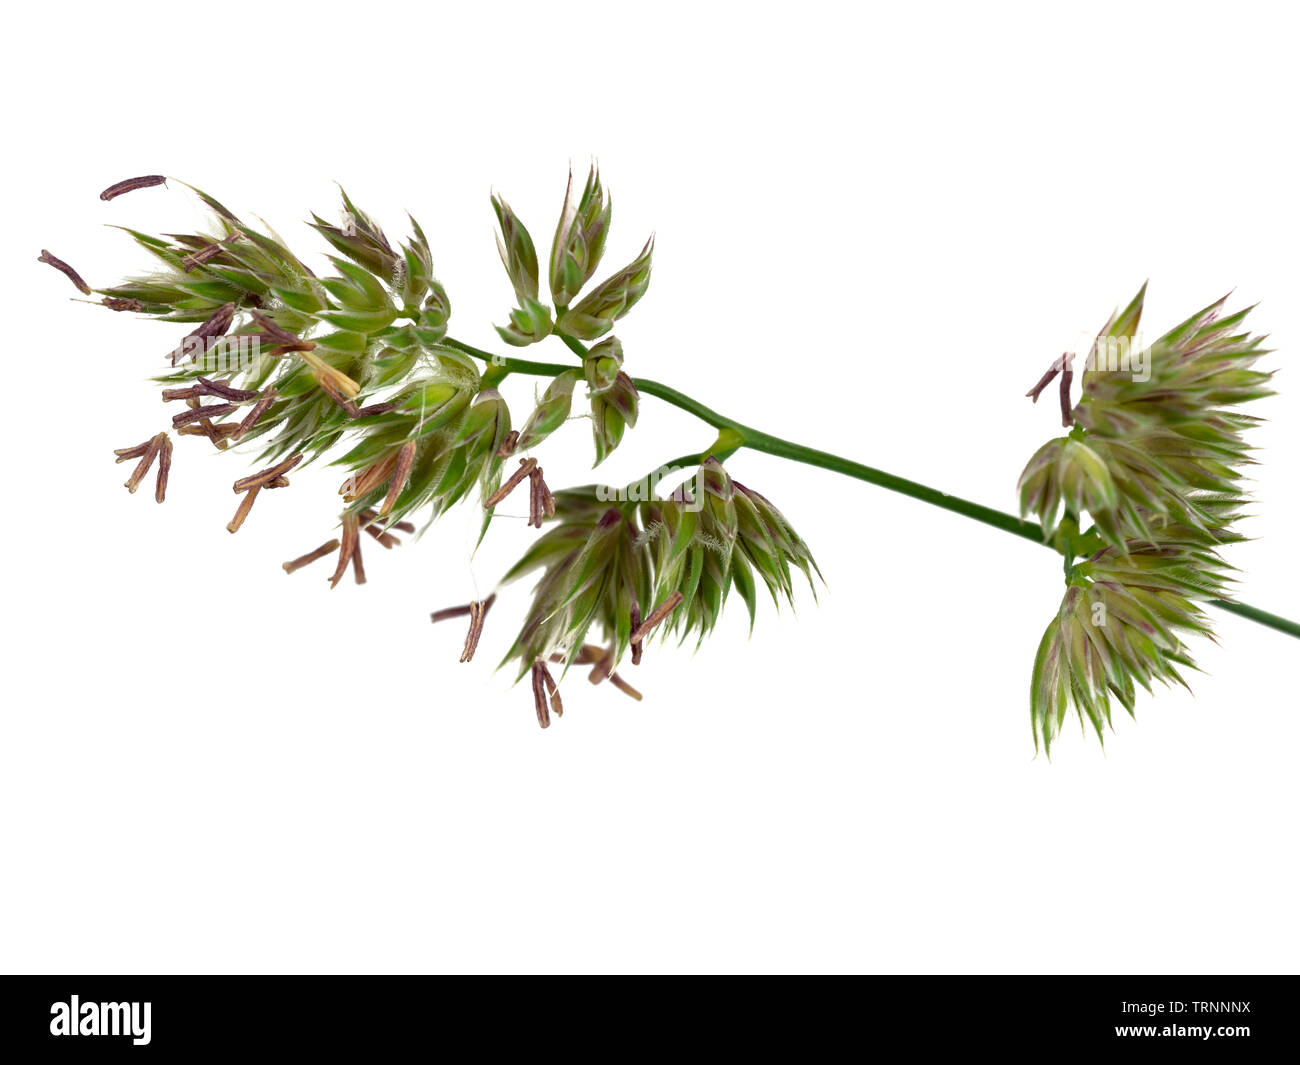 In prossimità di una fioritura spikelet nella testa del dactylis erba, Dactylis glomerata, su sfondo bianco Foto Stock